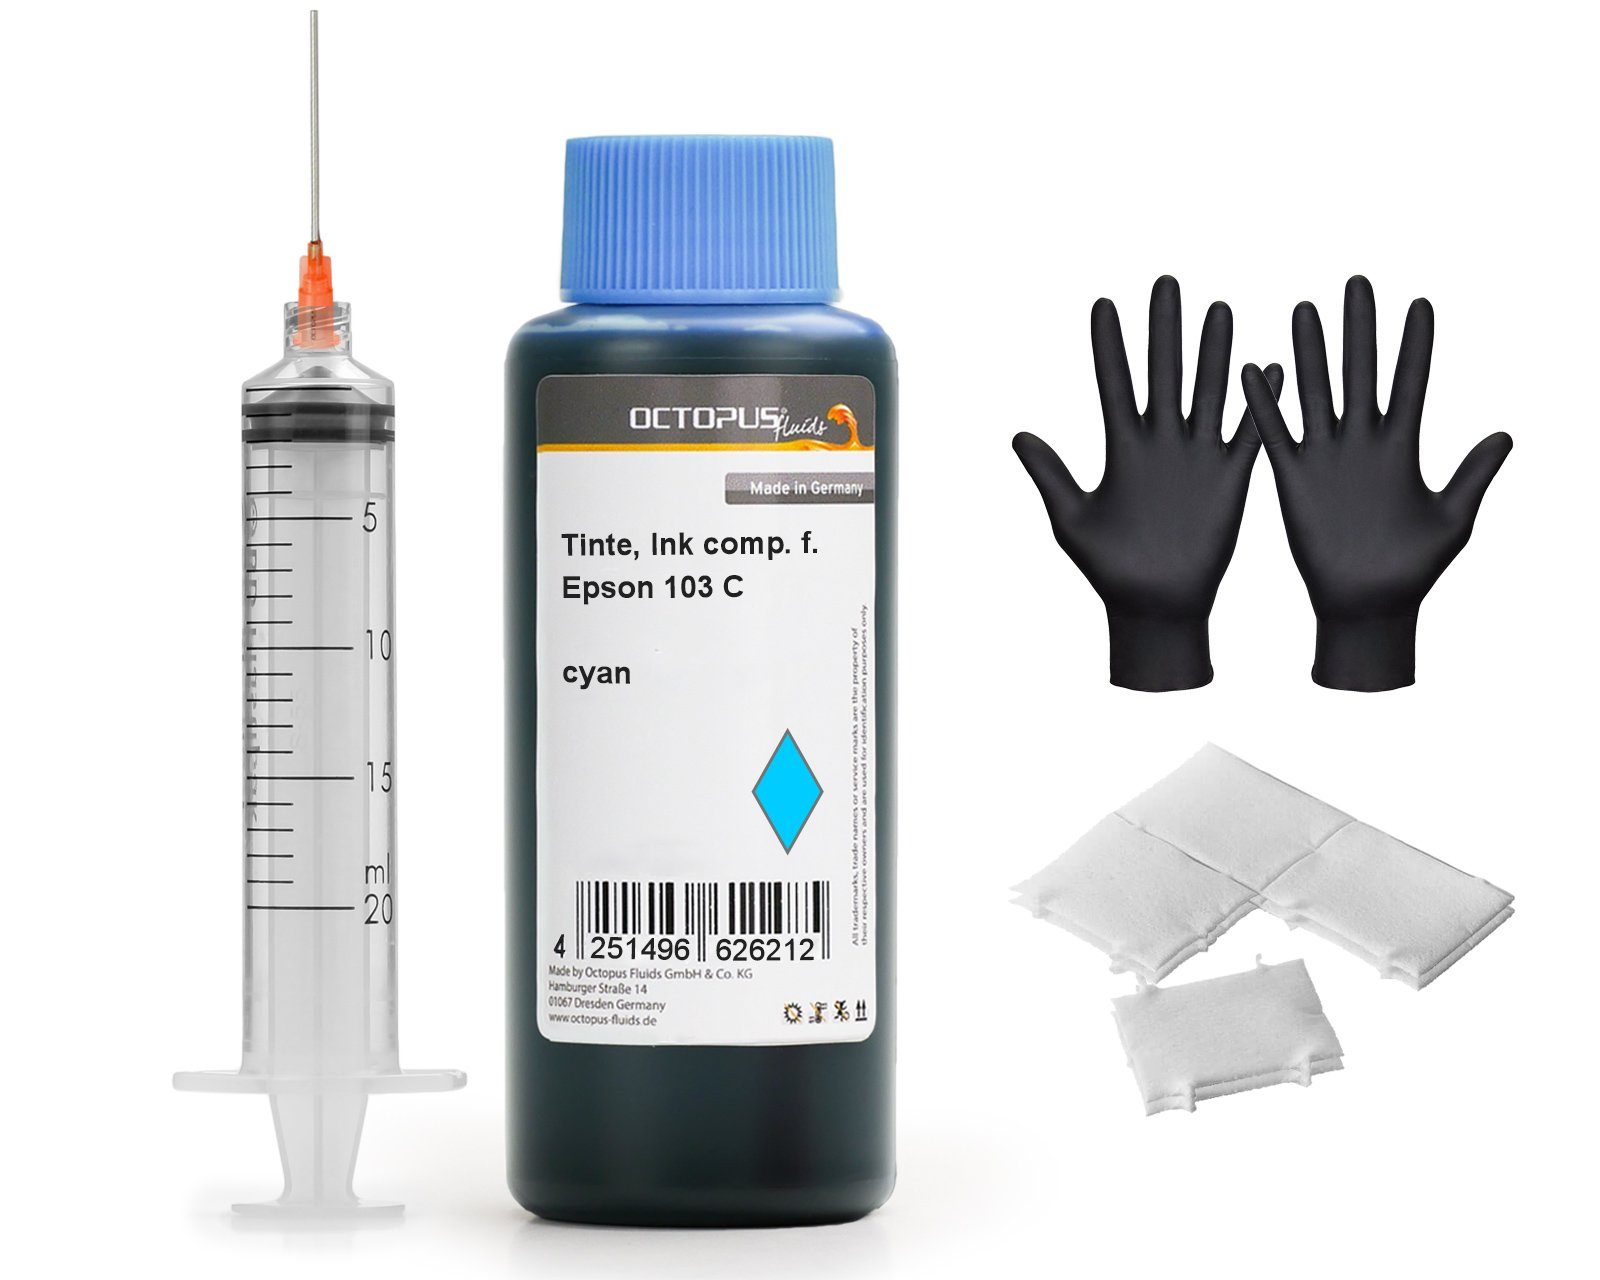 OCTOPUS Fluids Druckertinte für Epson 103 Druckertintentank, EcoTank L3110, L3150, Nachfülltinte (für Epson, 1x 250 ml) Cyan 250ml | Tintenpatronen